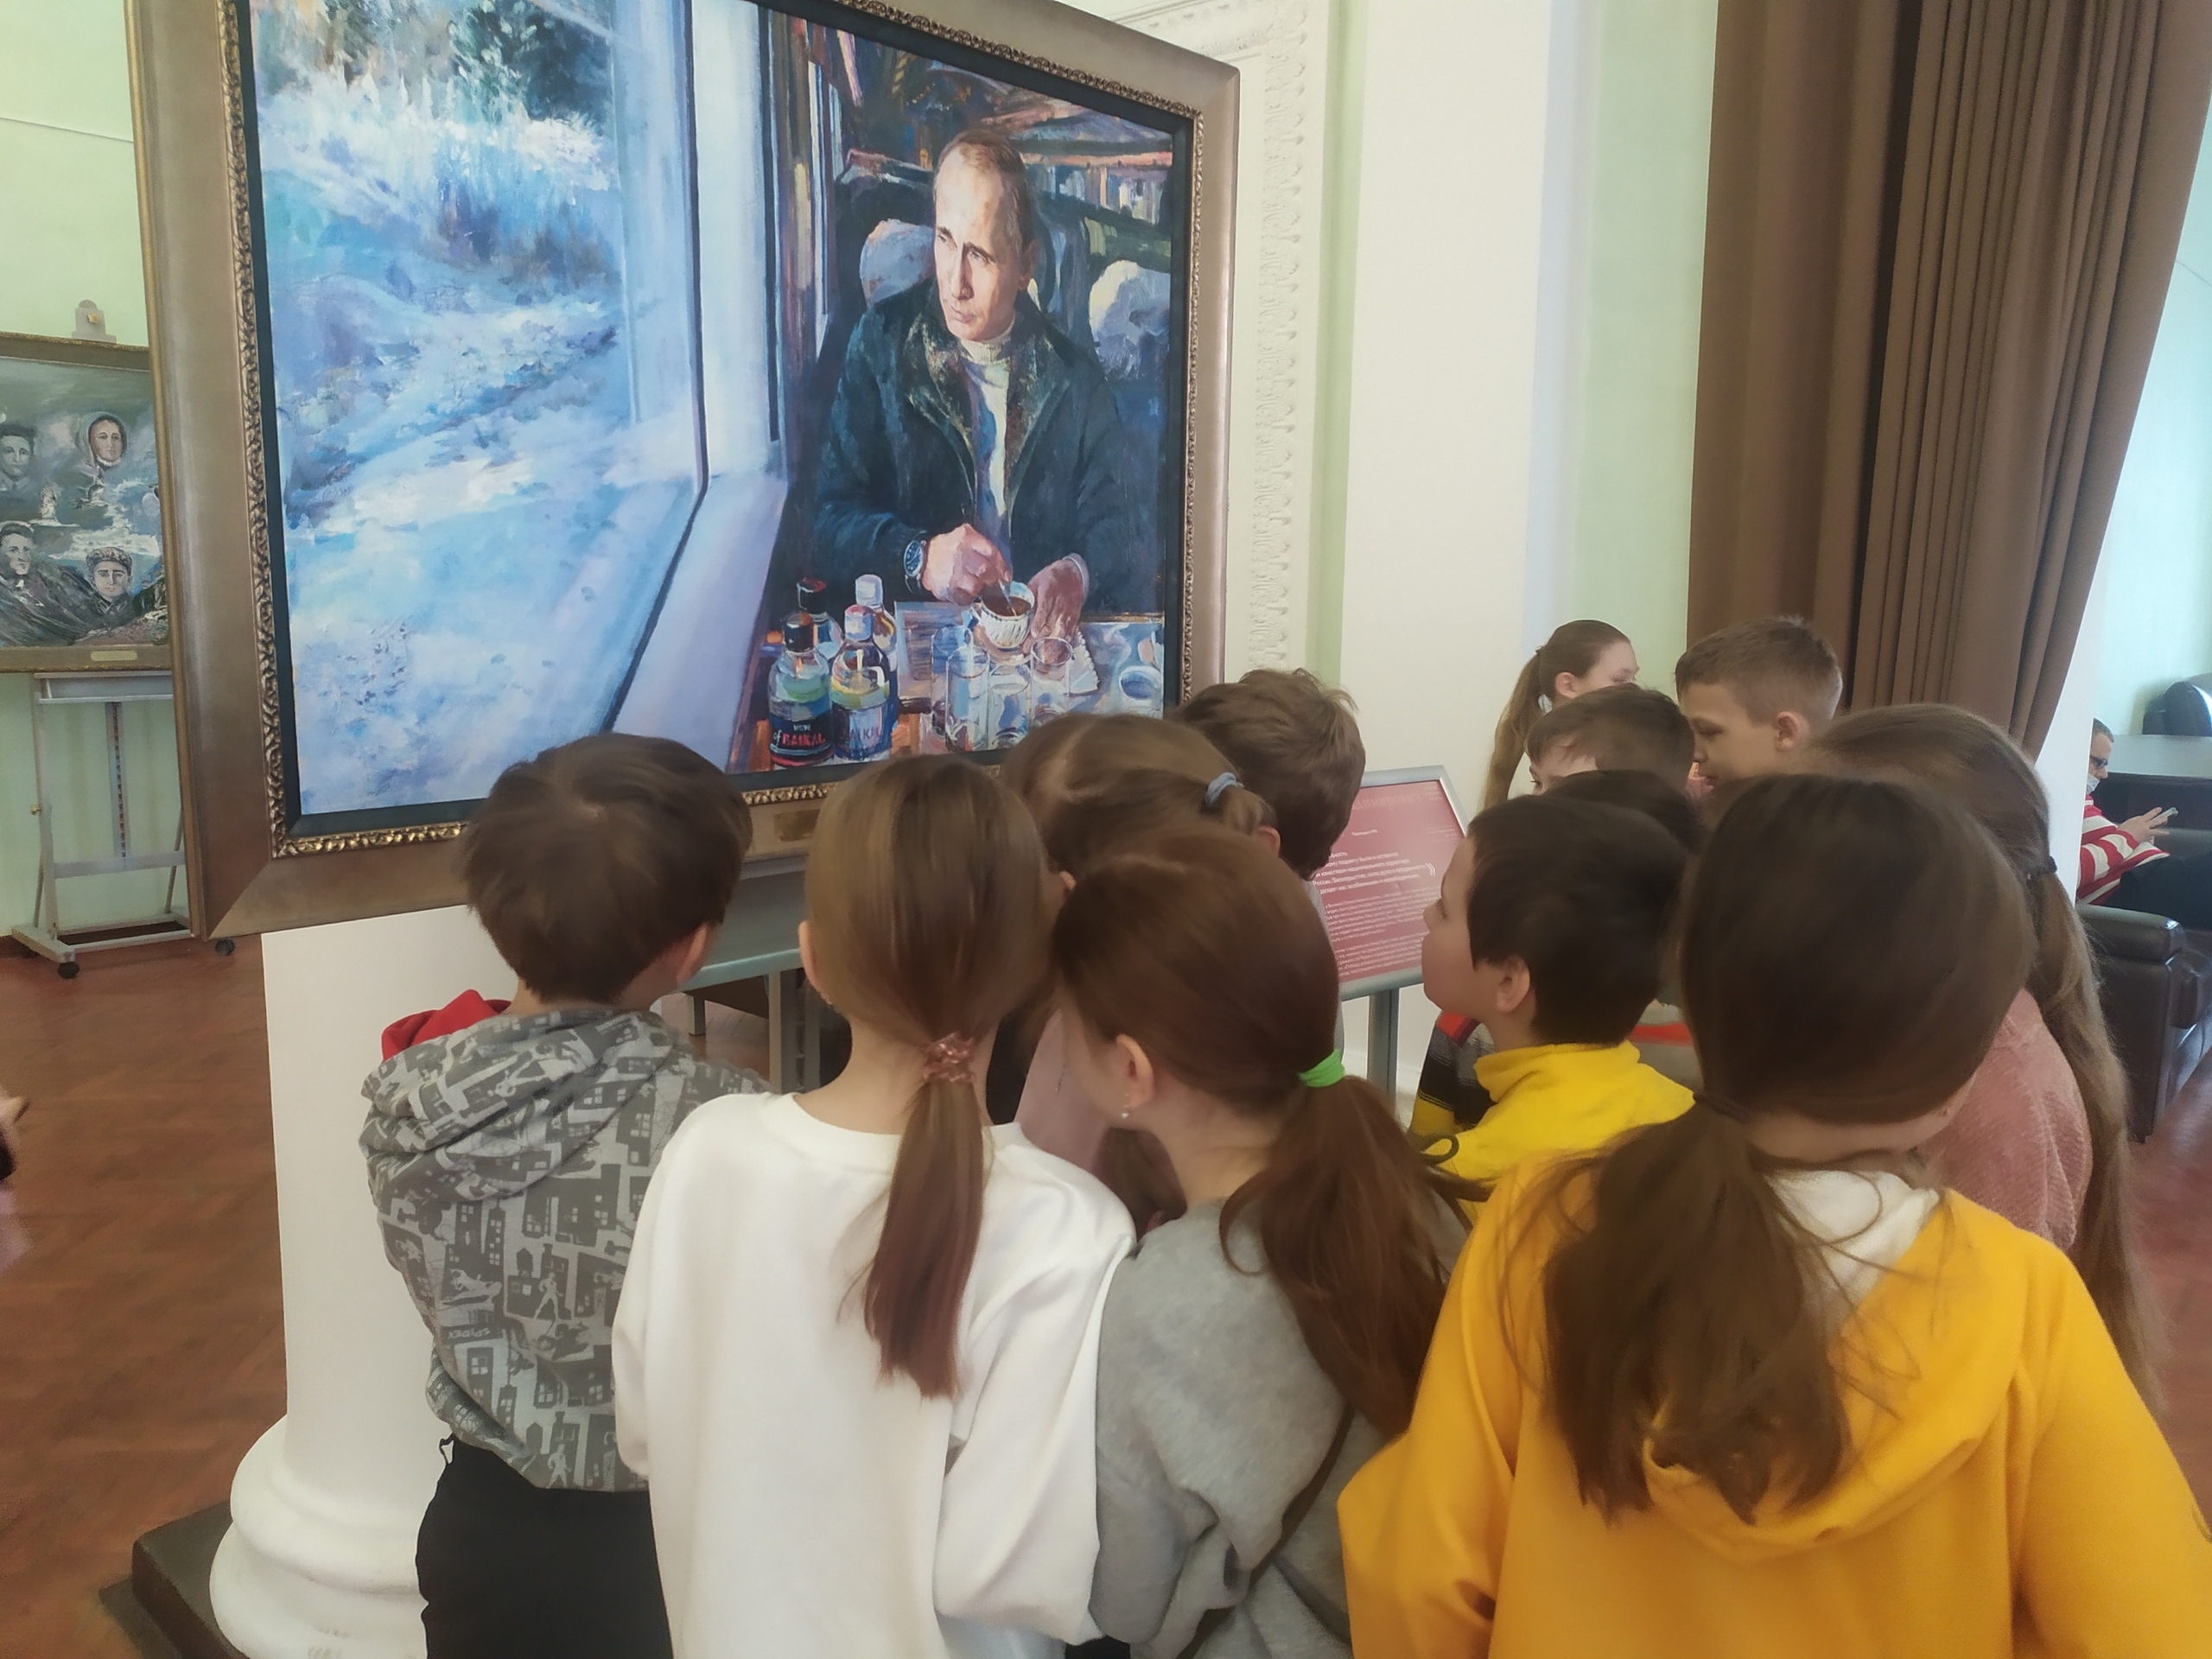 Ученики школы №2117 городского округа Щербинка посетили выставку картин. Фото: официальная страница школы №2117 в социальных сетях